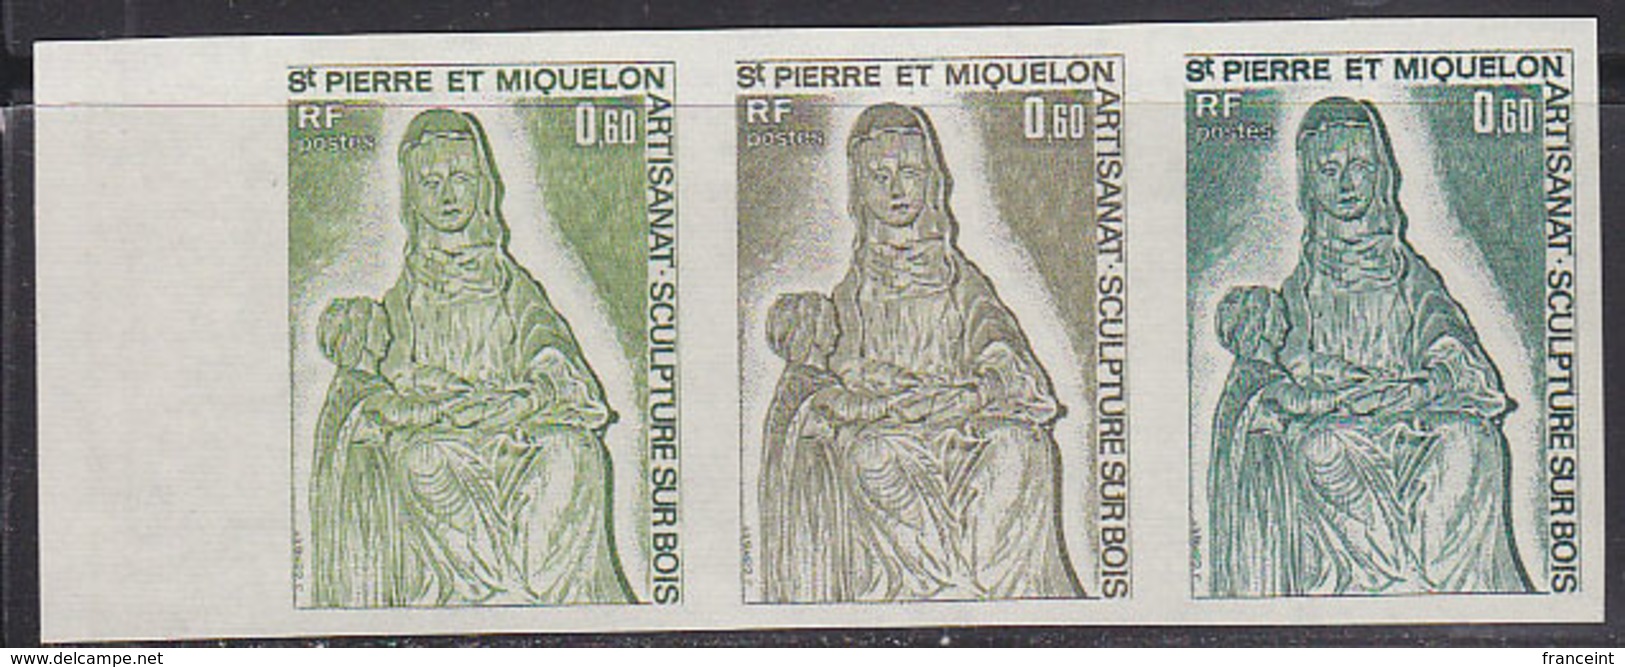 ST. PIERRE & MIQUELON (1975) St. Anne & Baby Mary. Trial Color Proof Strip Of 3. Scott No 442, Yvert No 444. - Sin Dentar, Pruebas De Impresión Y Variedades